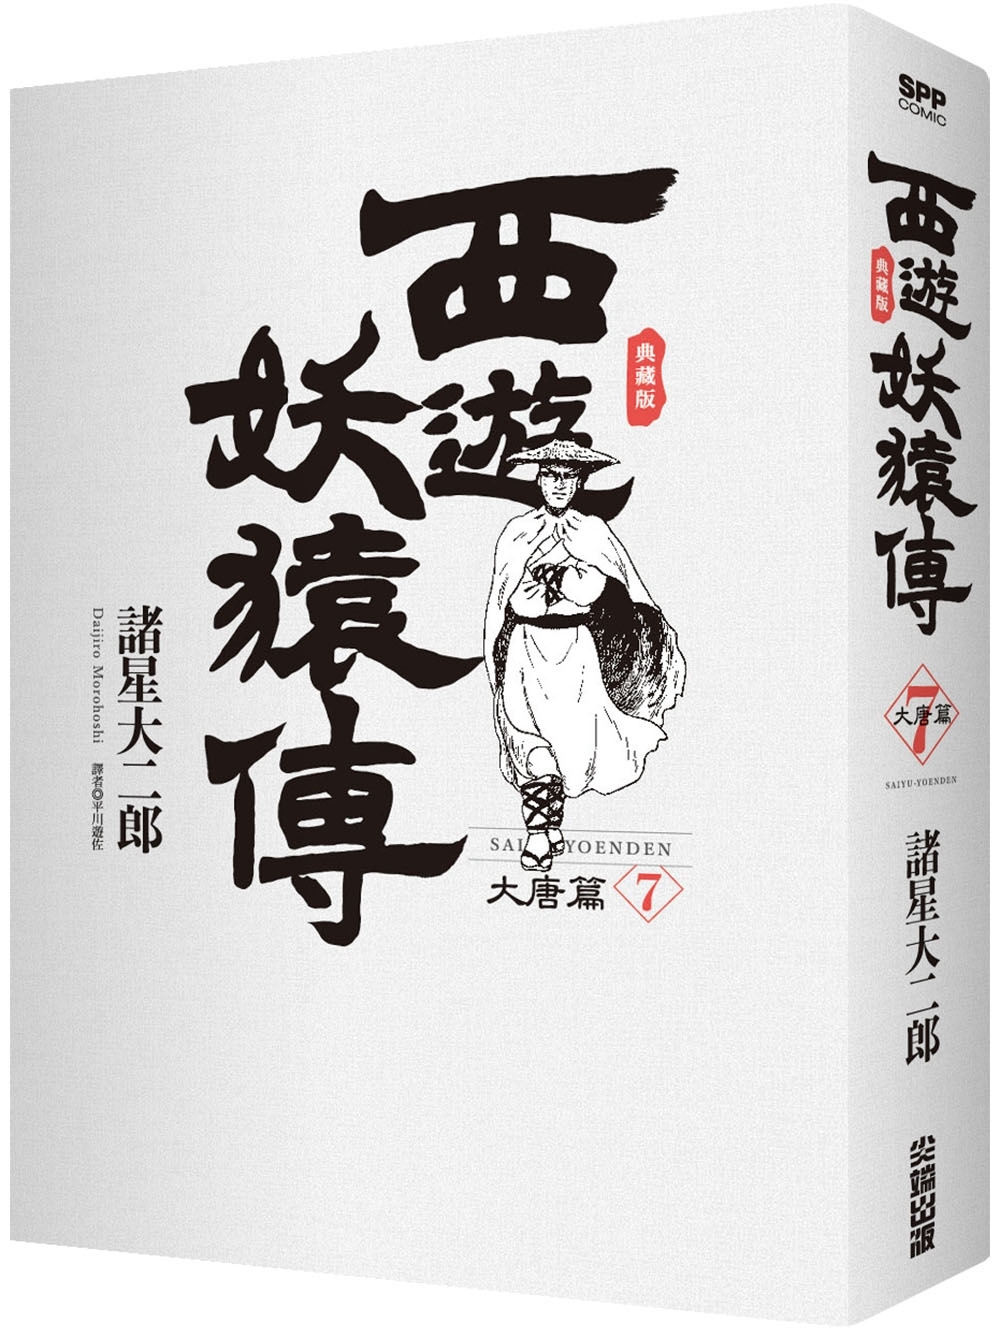 西遊妖猿傳大唐篇典藏版(07) - 城邦阅读花园